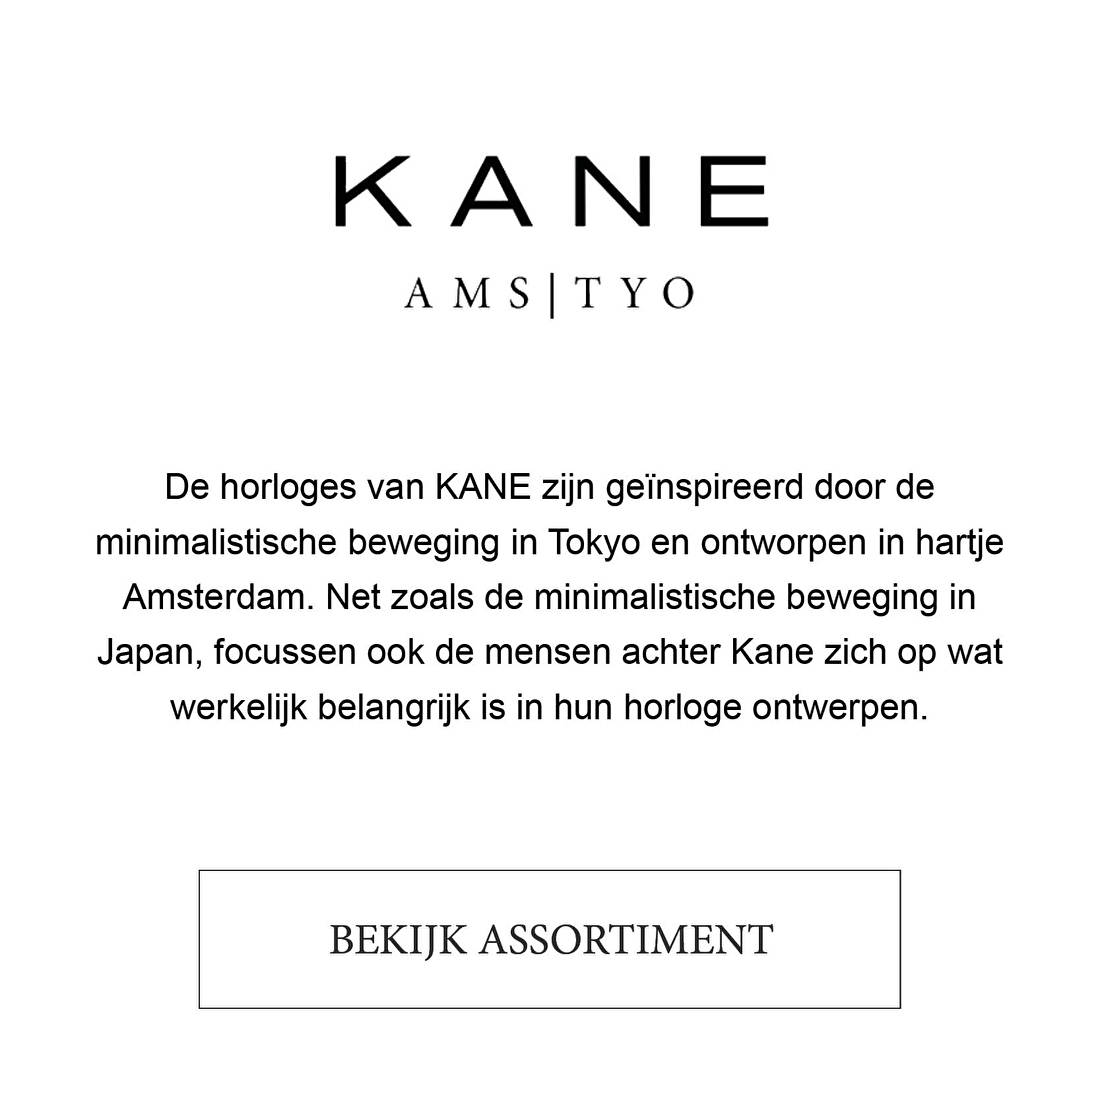 De horloges van KANE zijn geïnspireerd door de minimalistische beweging in Tokyo en ontworpen in hartje Amsterdam. Net zoals de minimalistische beweging in Japan, focussen ook de mensen achter Kane zich op wat werkelijk belangrijk is in hun horloge ontwerpen.